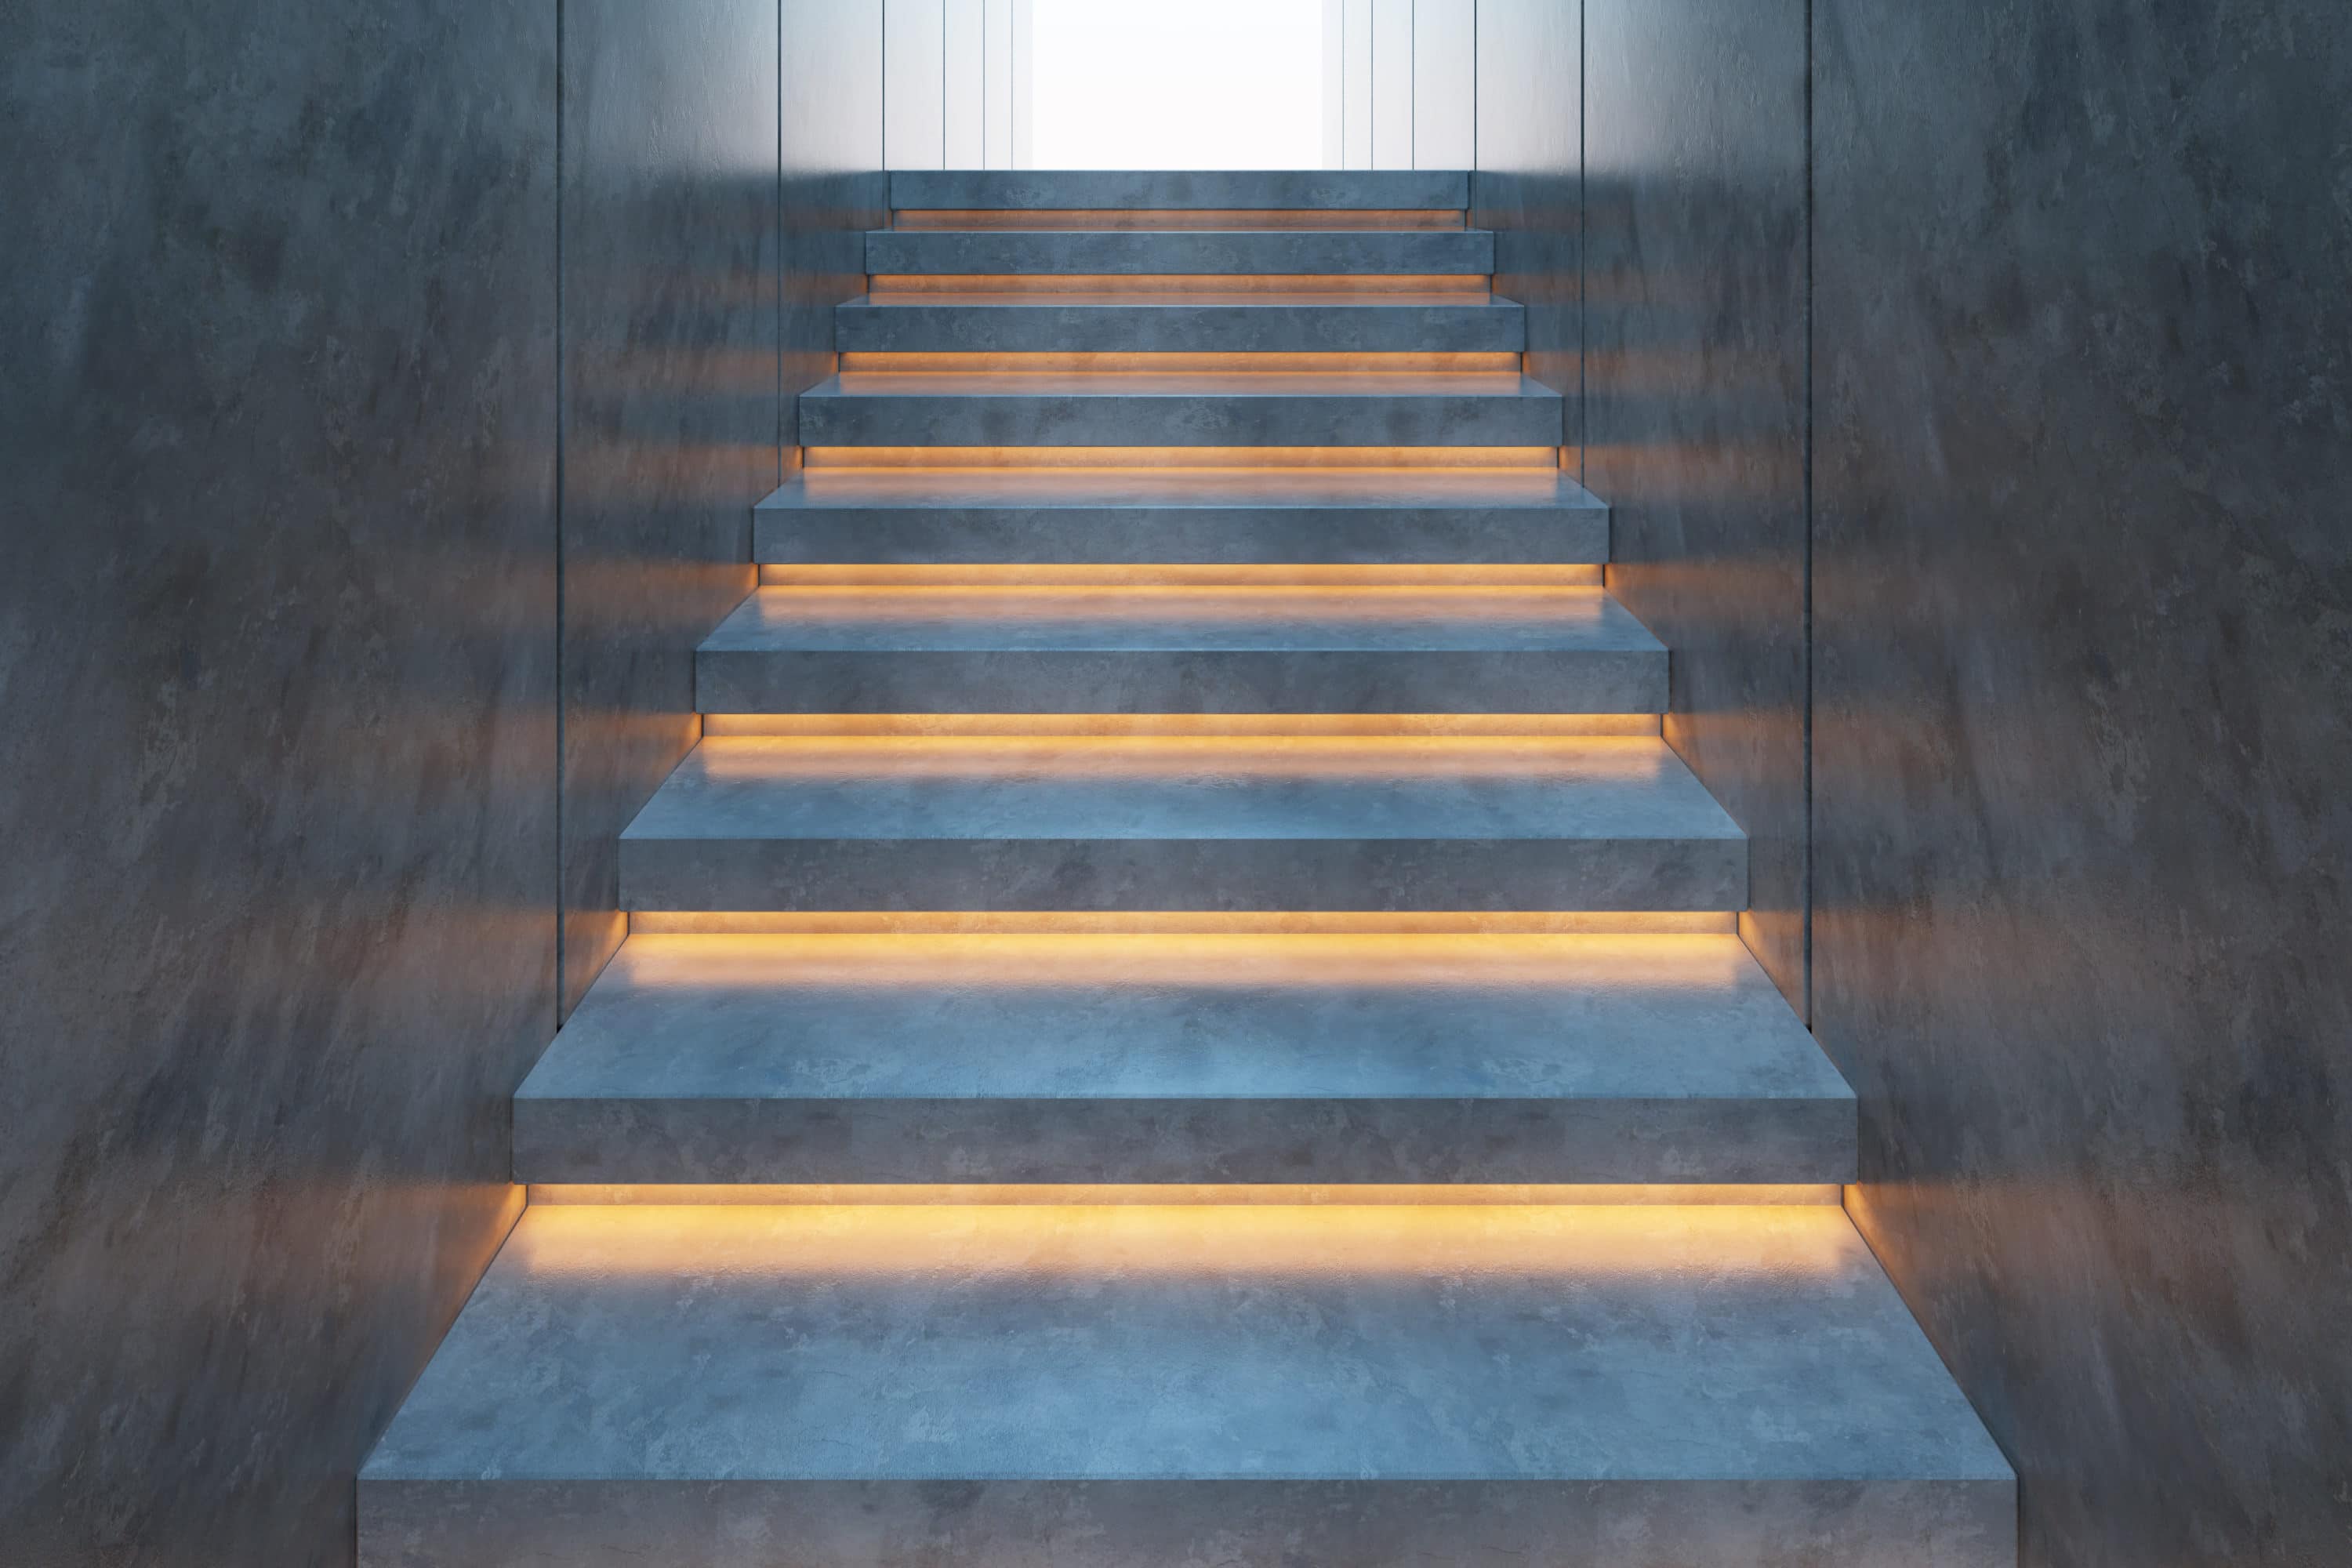 Éclairage escalier : Possibilités et prix (+ inspiration)